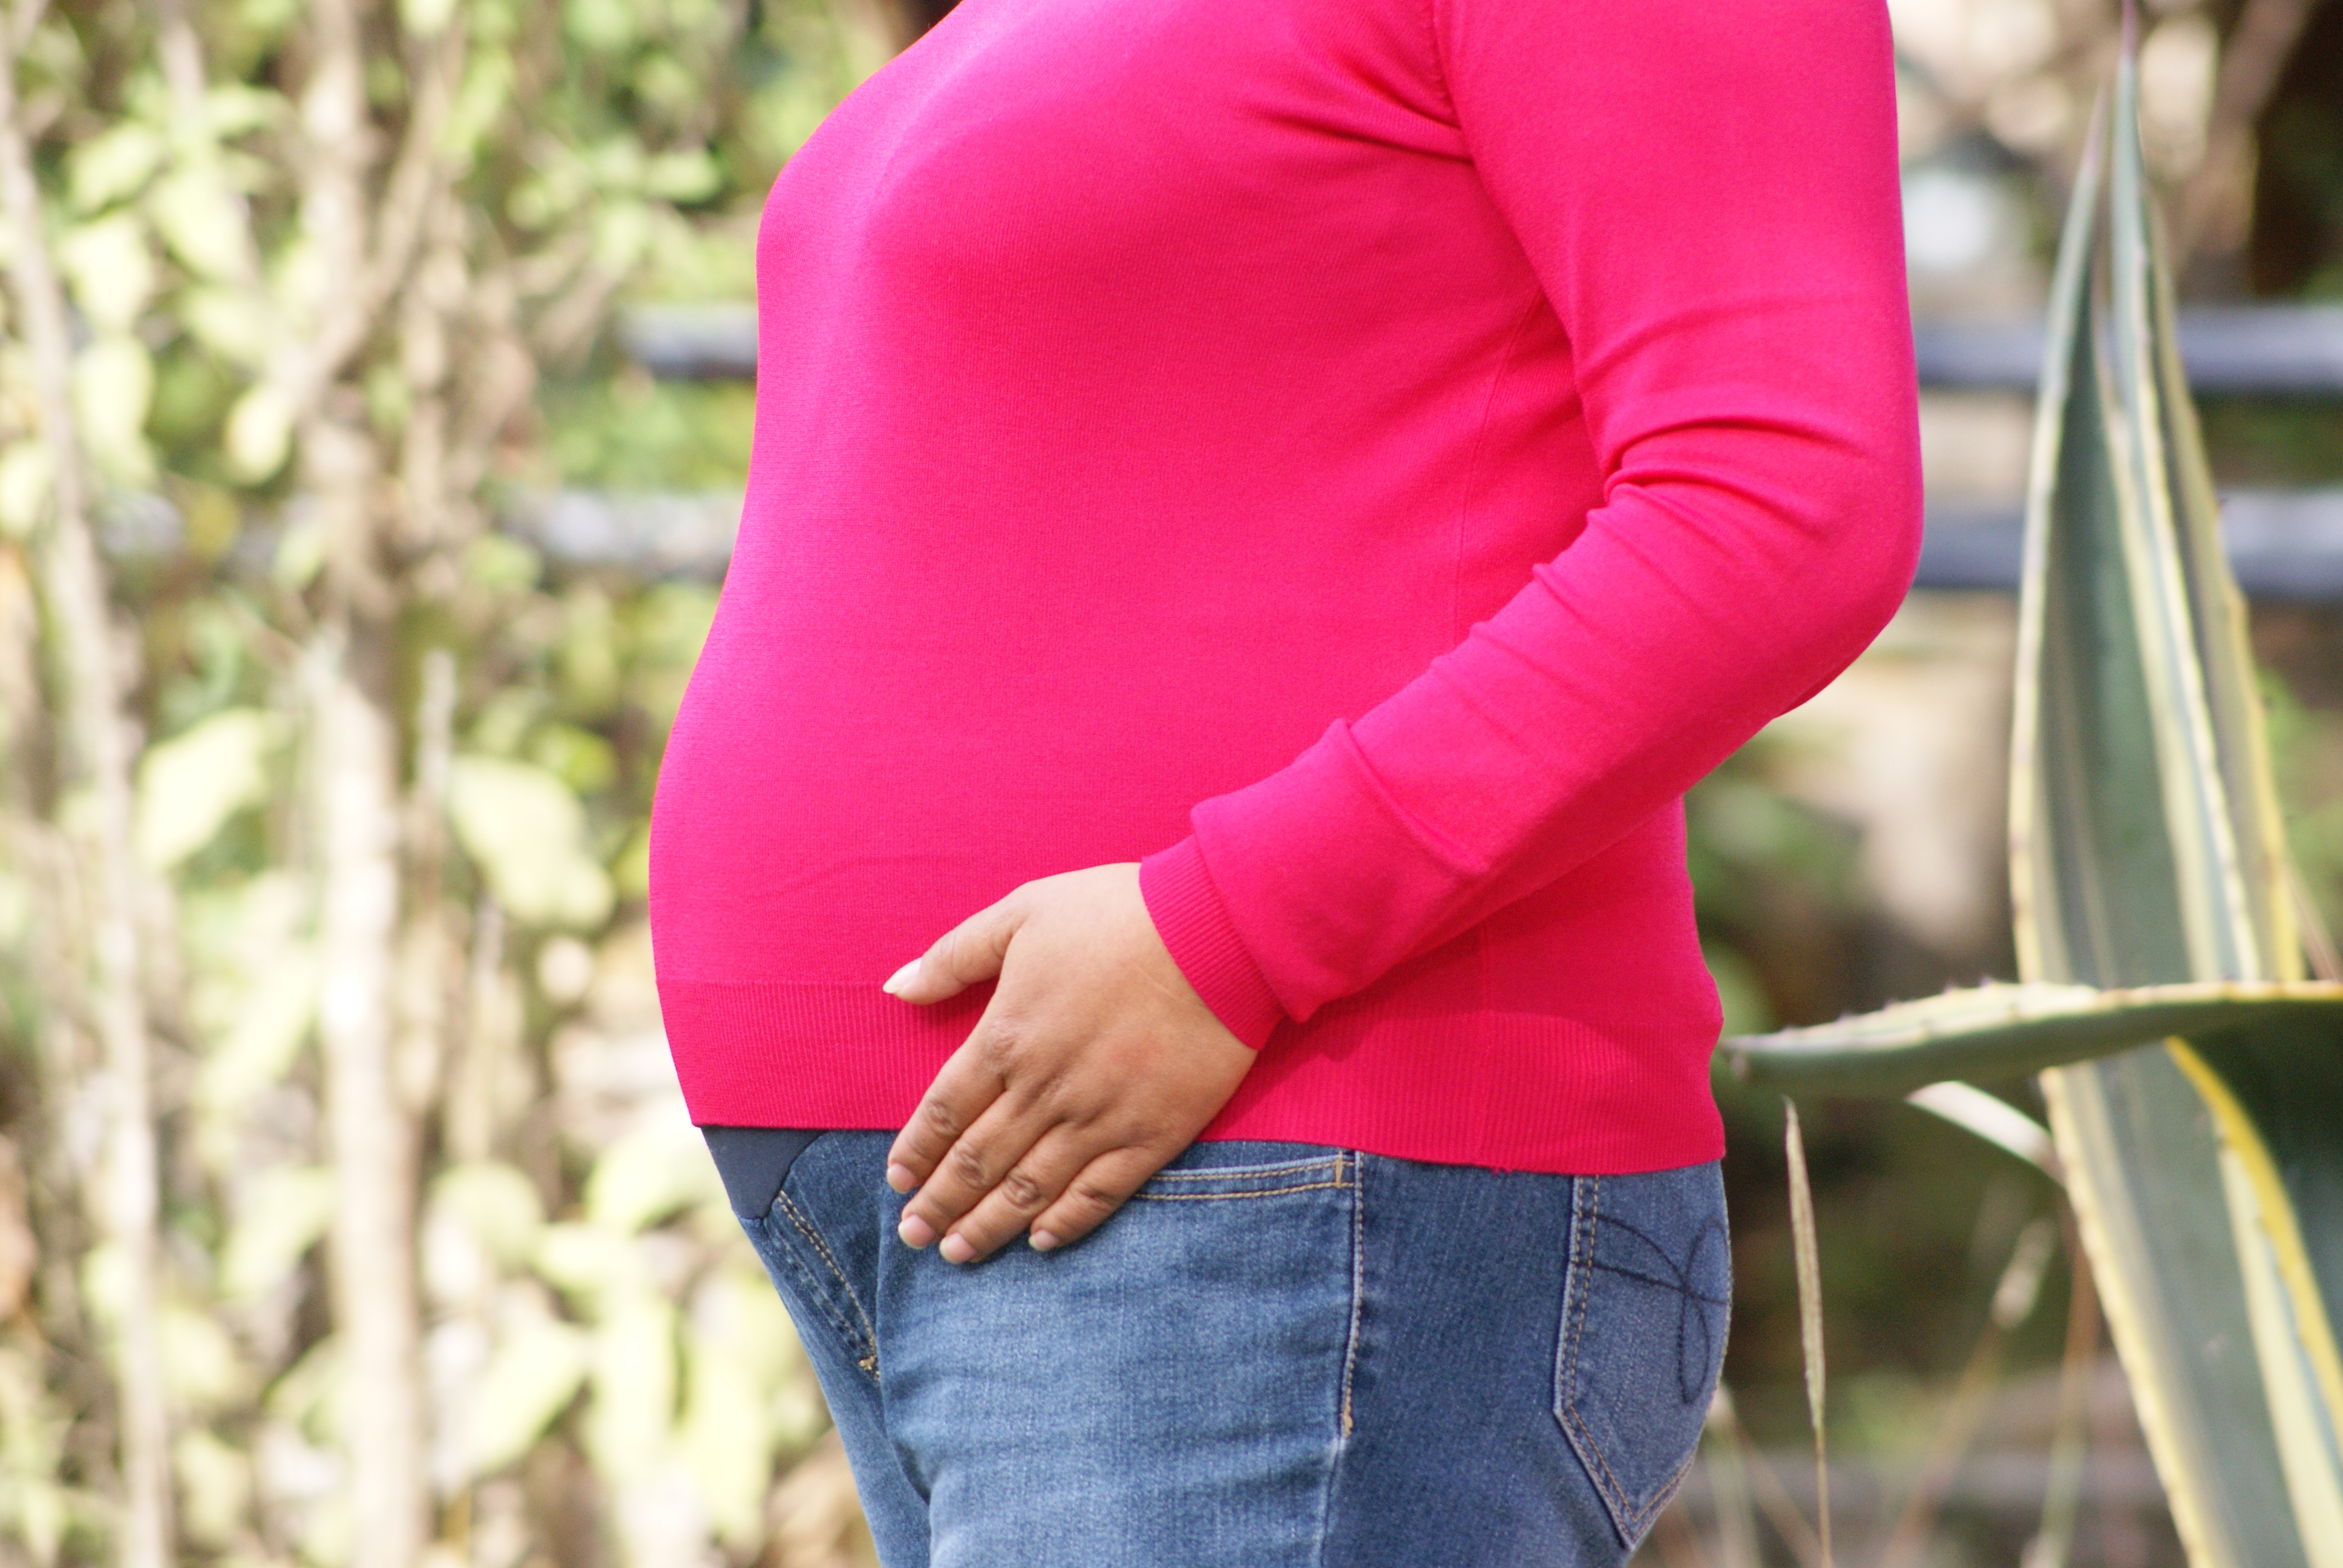 Mujeres embarazadas, atención segura de su salud y parto en tiempos del COVID-19. Posibilidades en el contexto mexicano